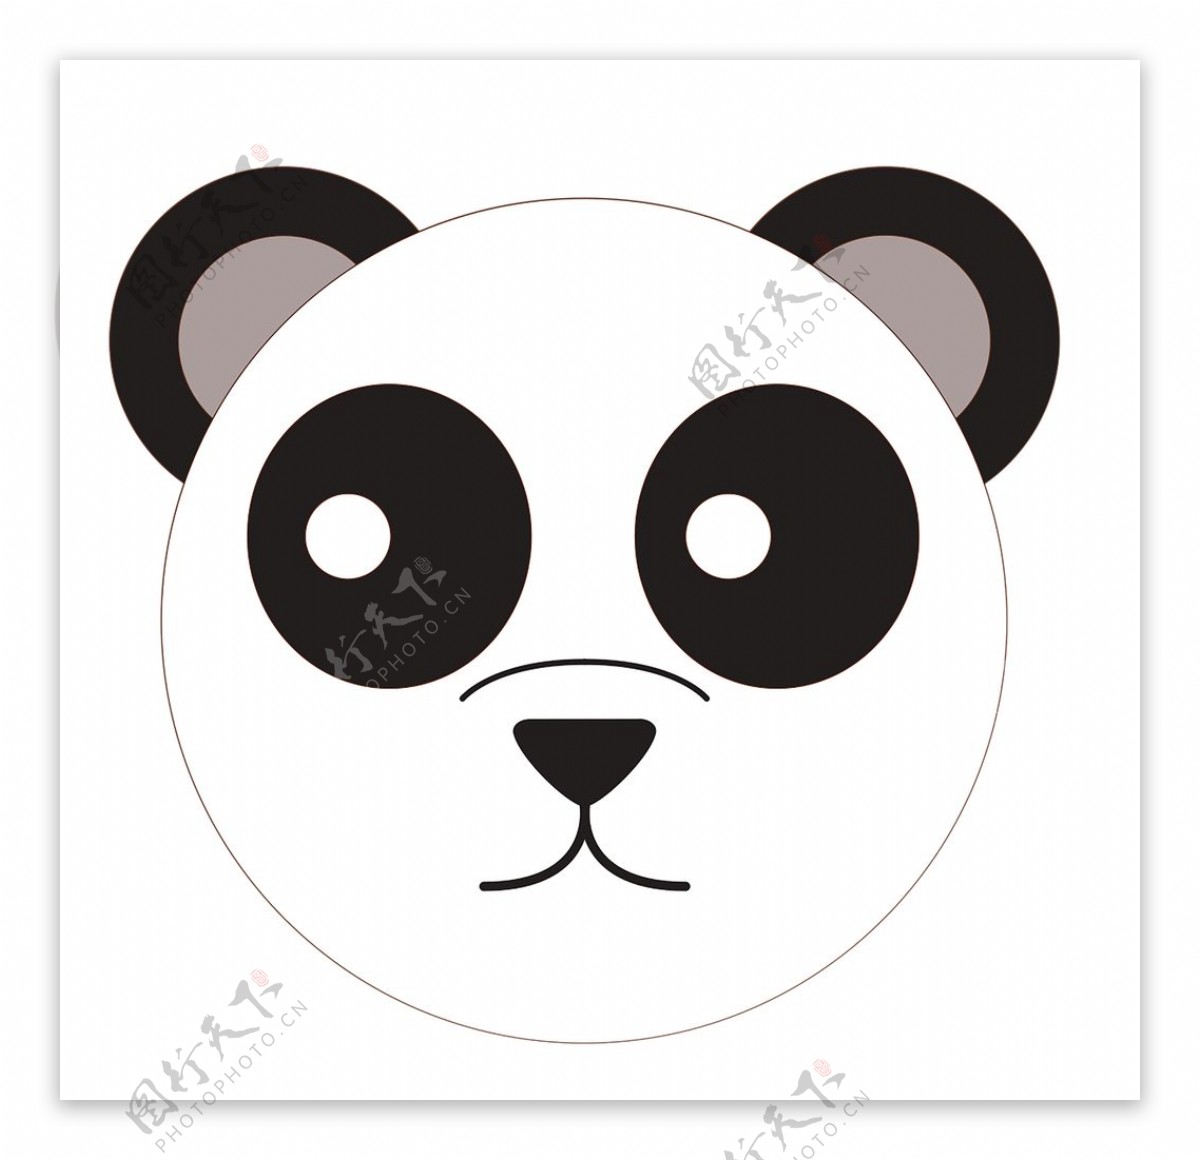 熊猫表情包图片